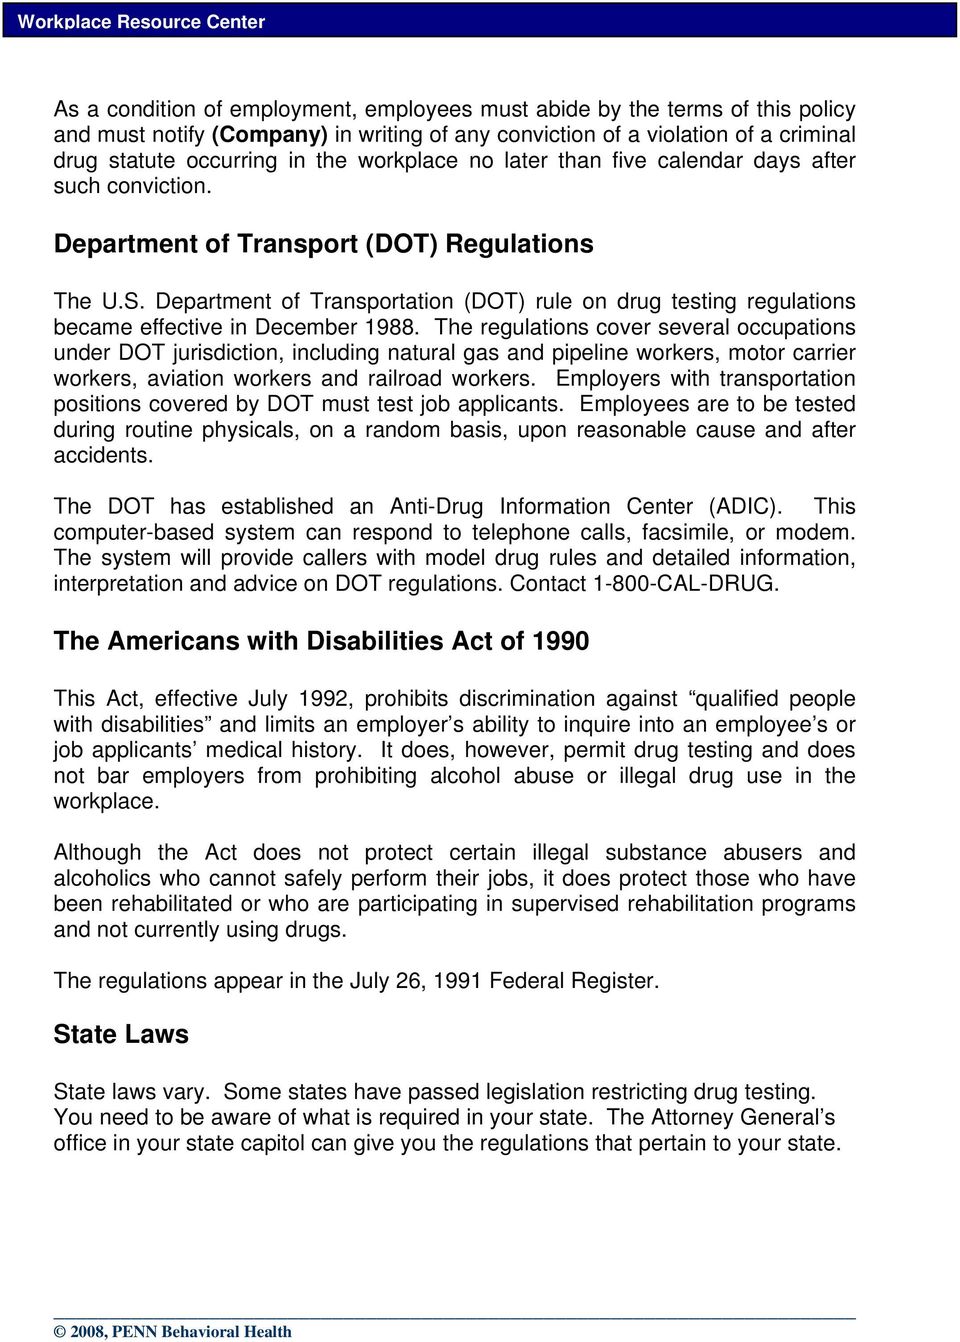 Department of Transportation (DOT) rule on drug testing regulations became effective in December 1988.